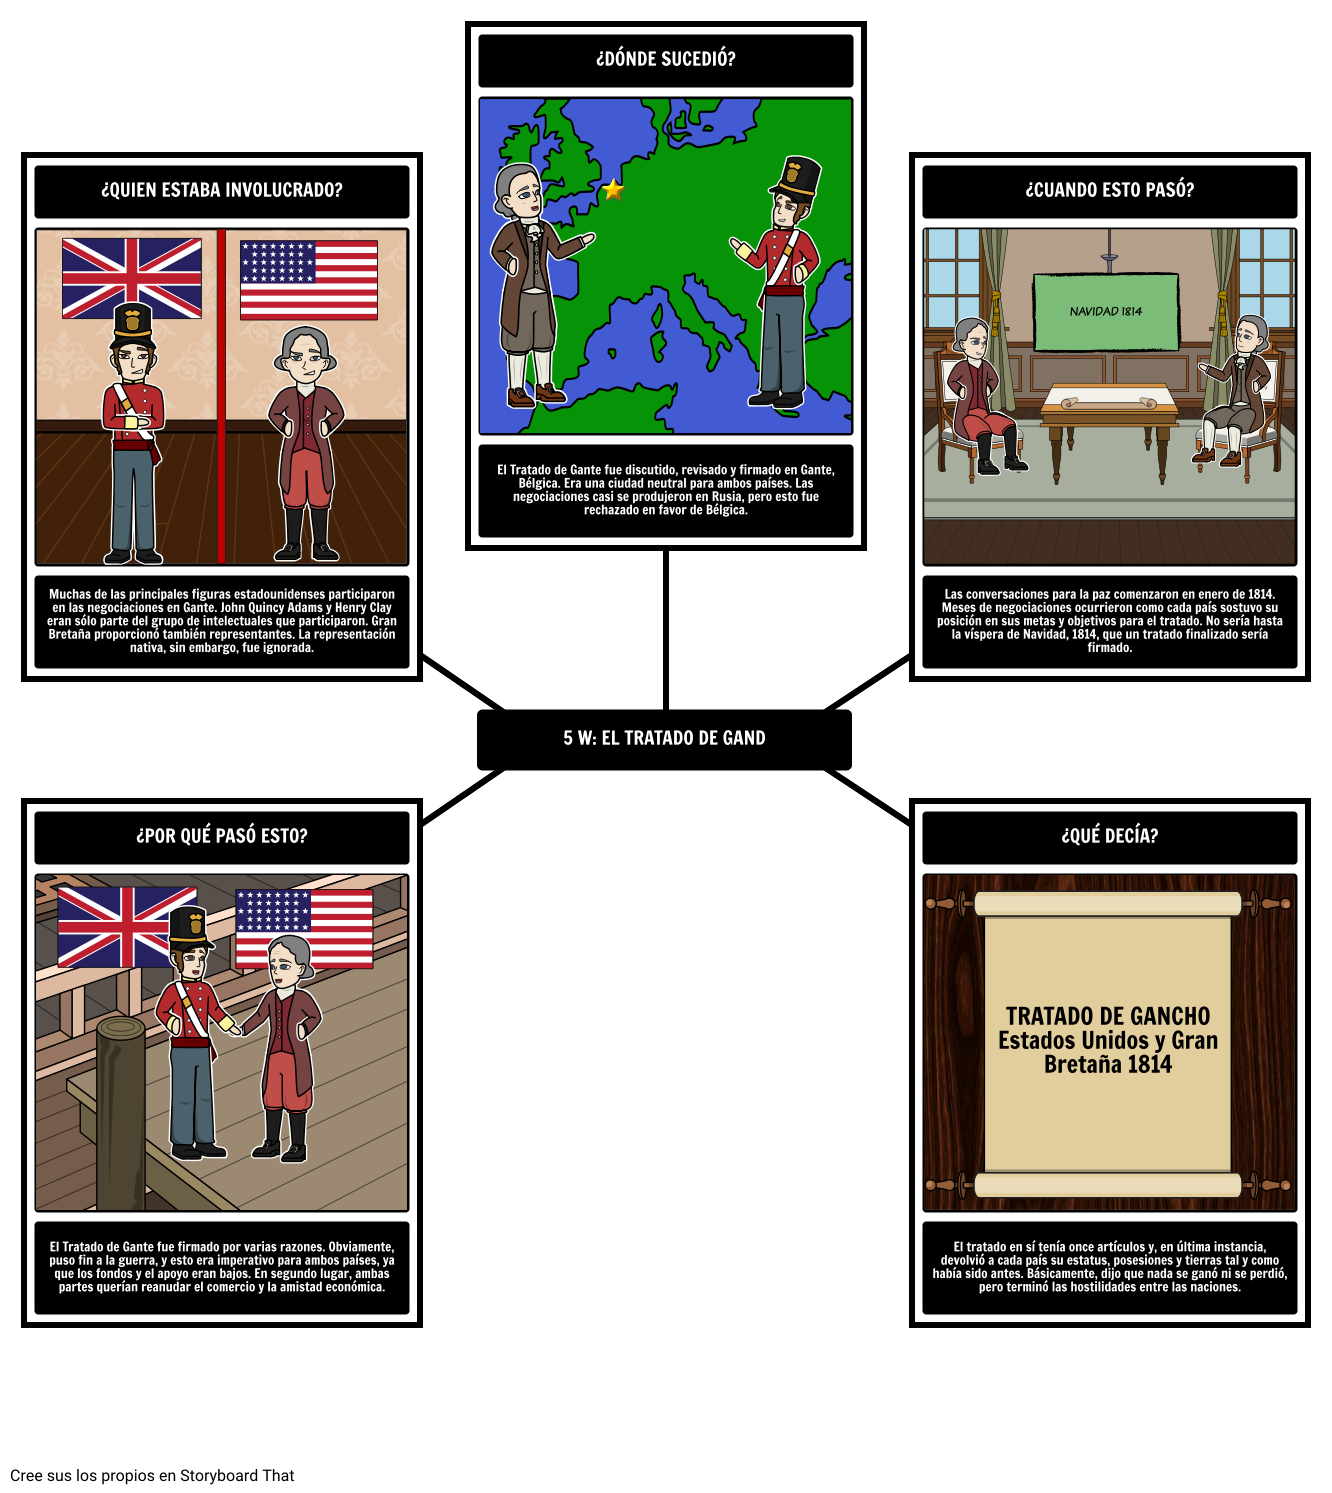 La Guerra de 1812 - 5 Ws del Tratado de Gante